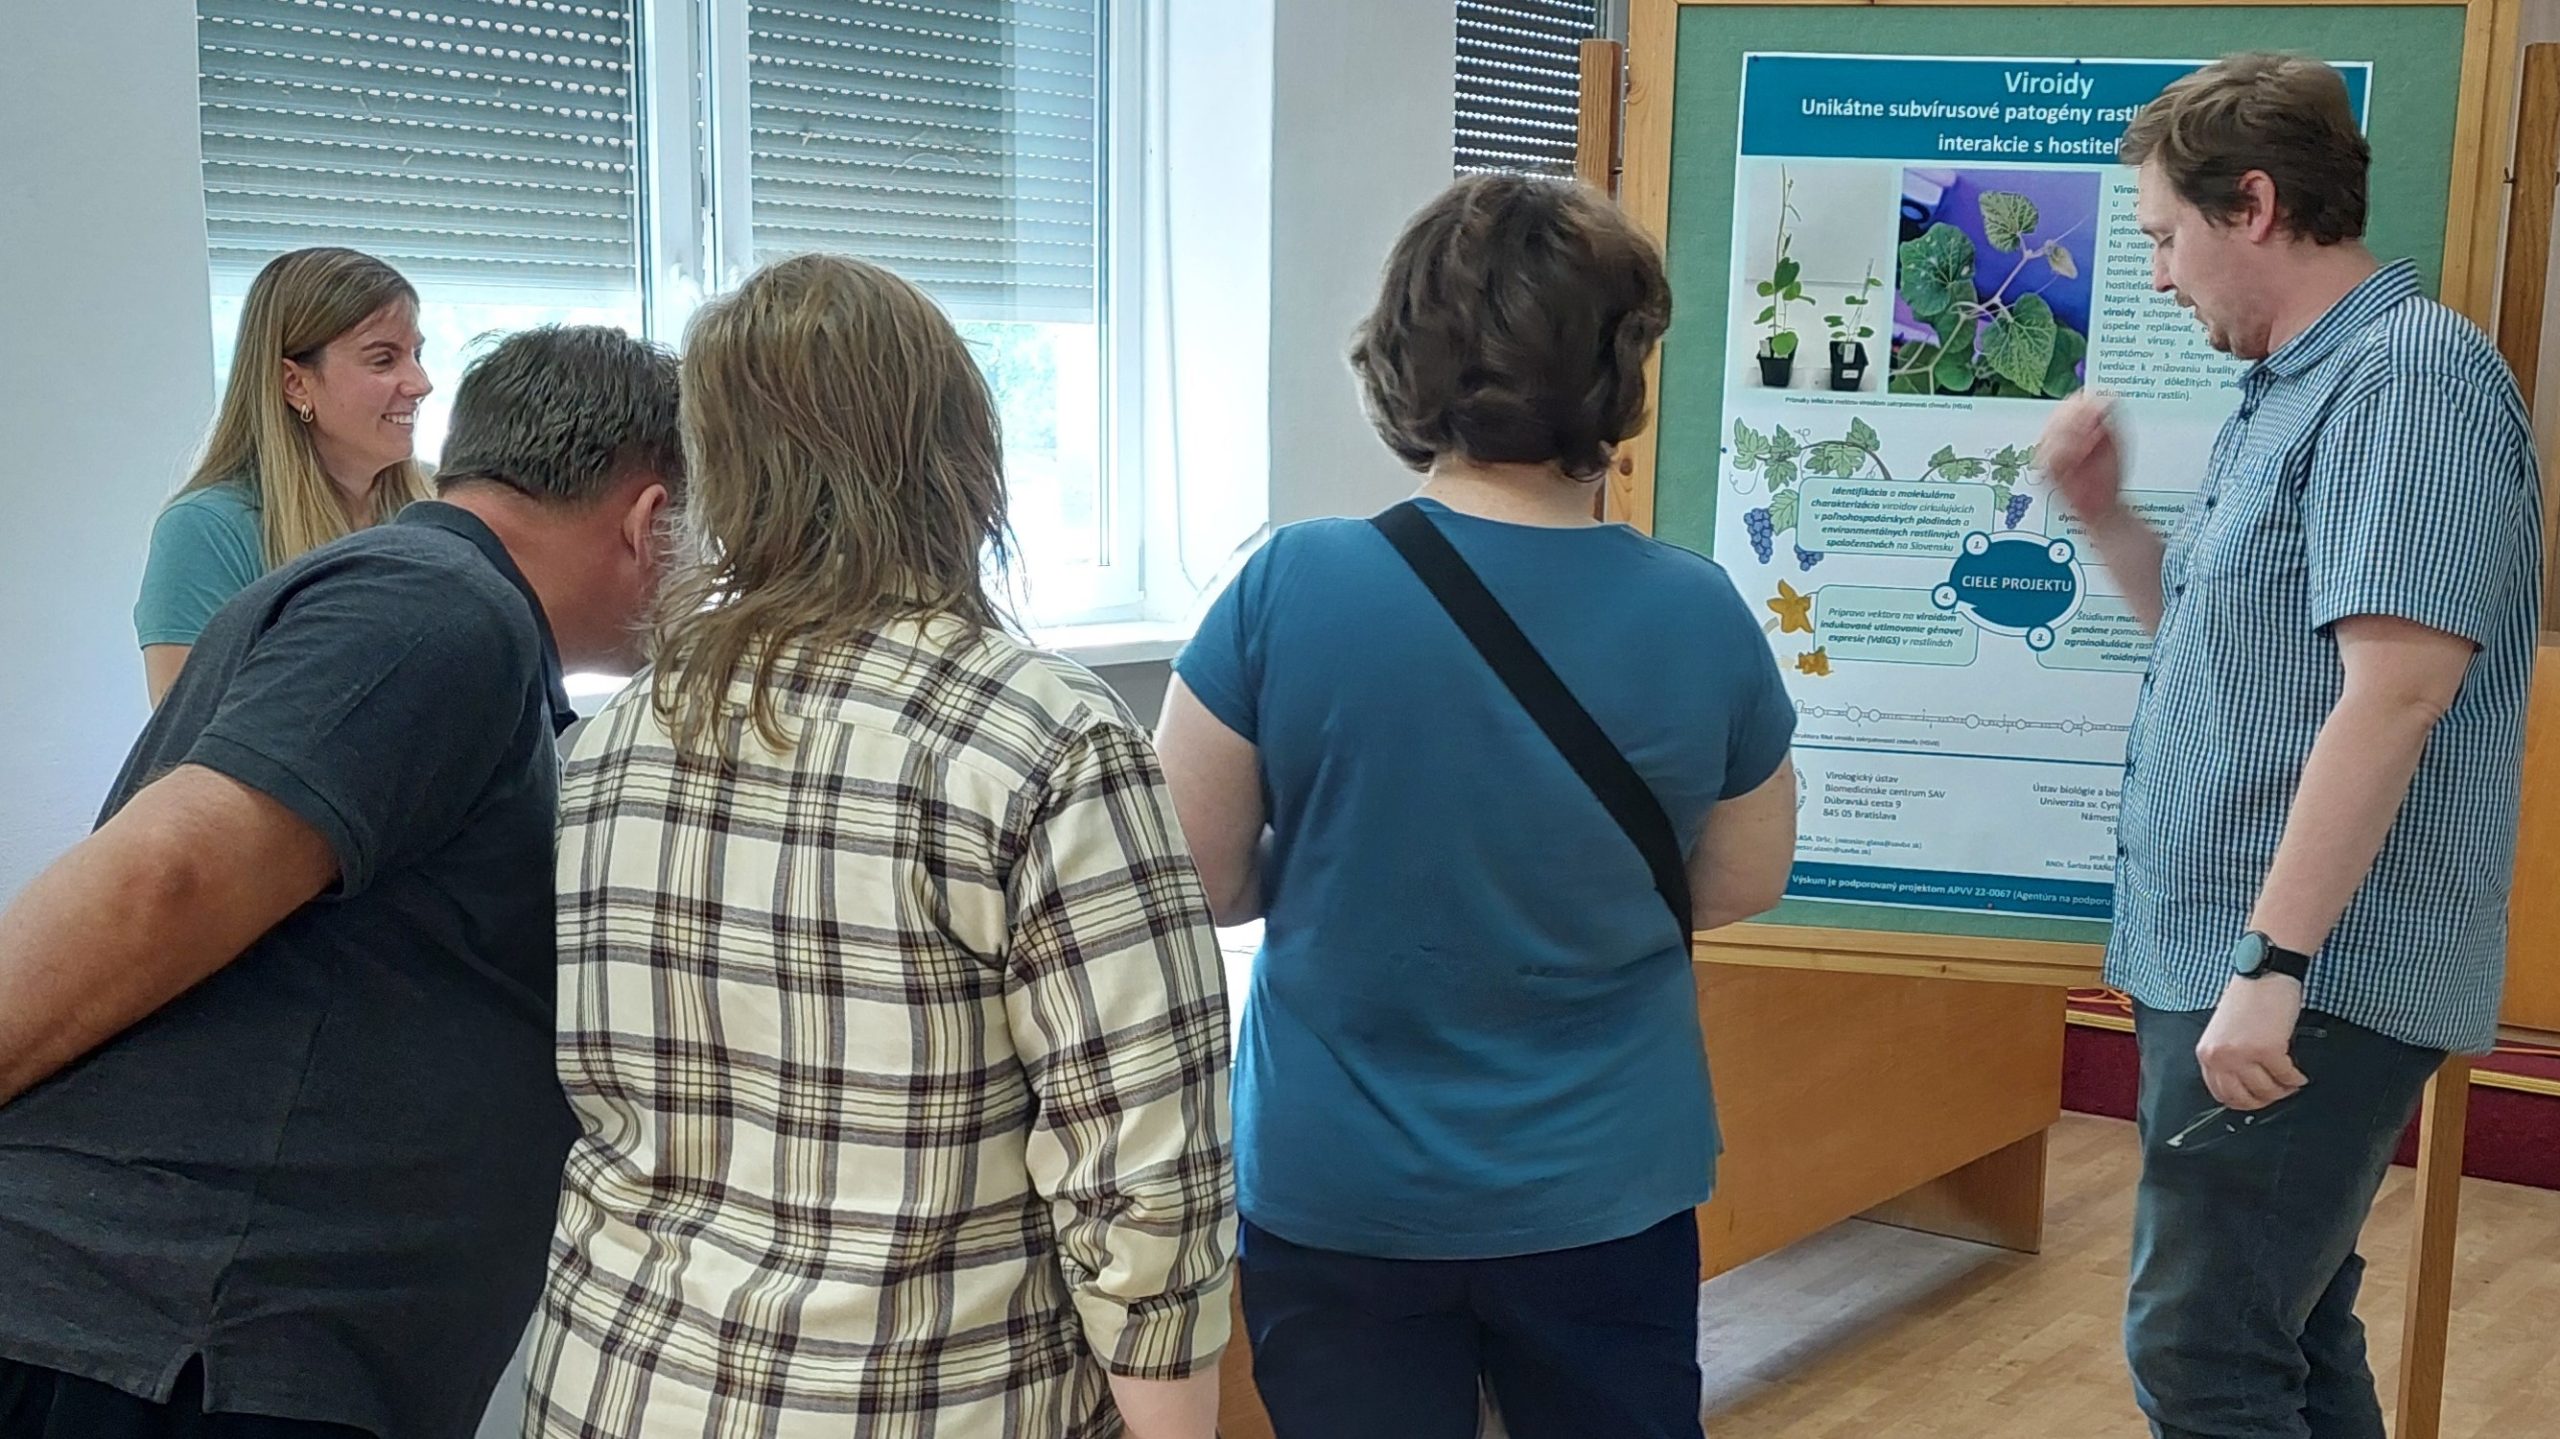 Mladí vedci z BMC SAV predstavujú pred plagátom čiastočné výsledky výskumu o viroidoch na podujatí v Piešťanoch k medzinárodnému Dňu fascinácie rastlinami.